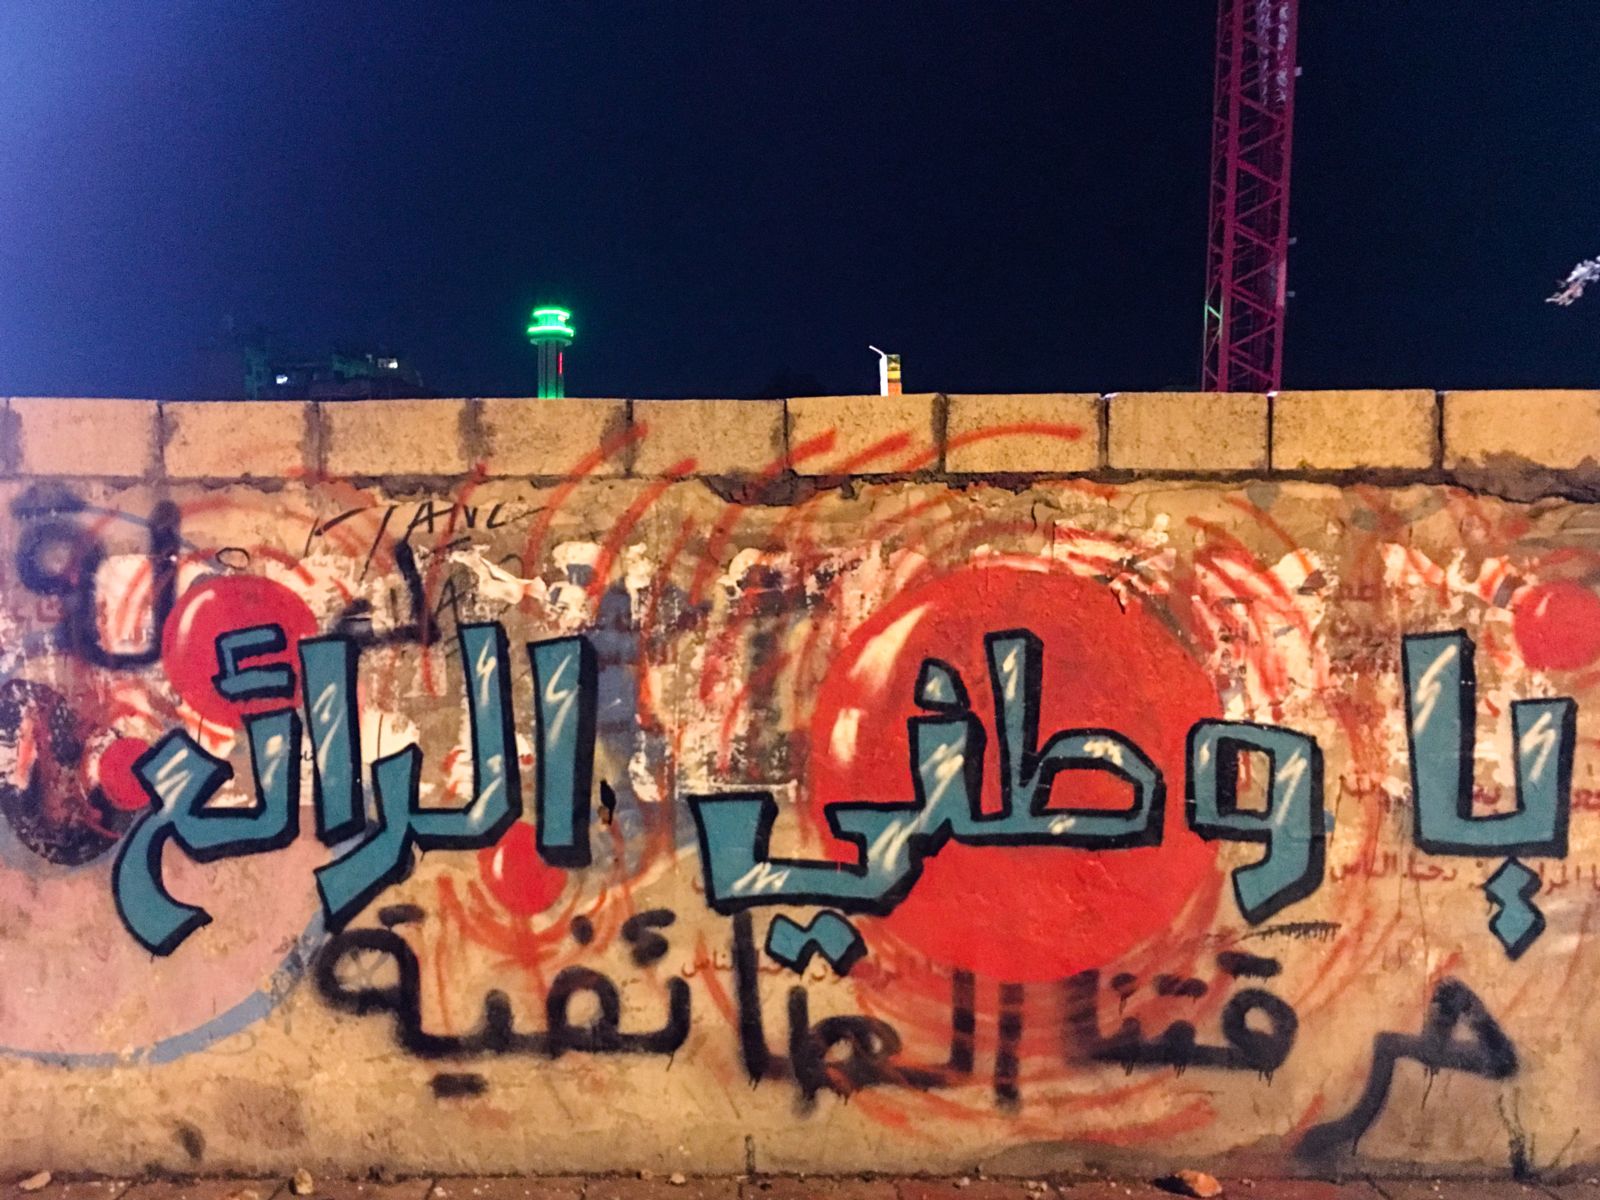 Les graffitis créent une communication positive sur les droits humains au Liban